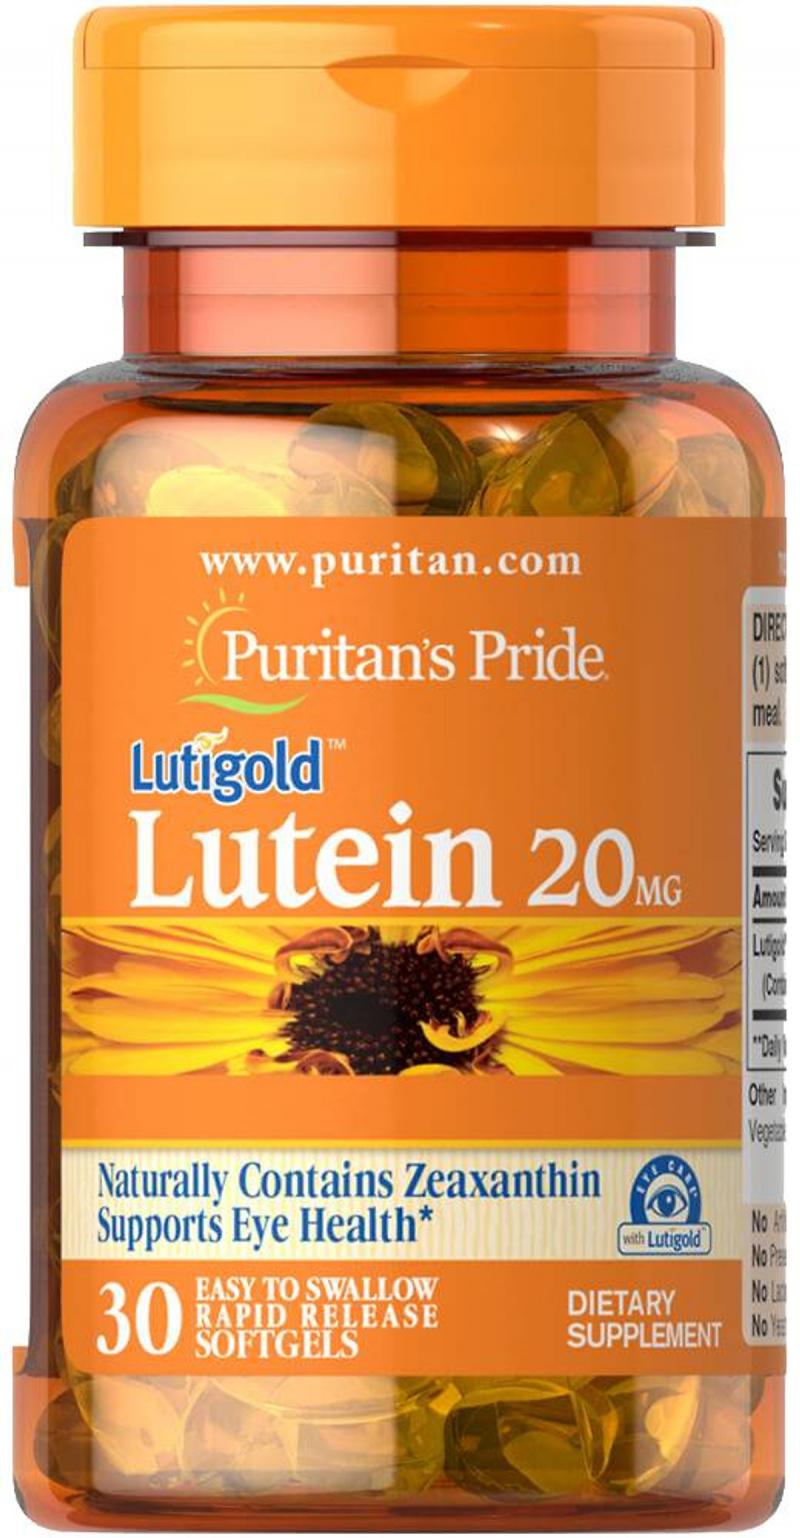 Viên uống bổ mắt Luitigold Lutein 20mg 120 viên Puritan's Pride